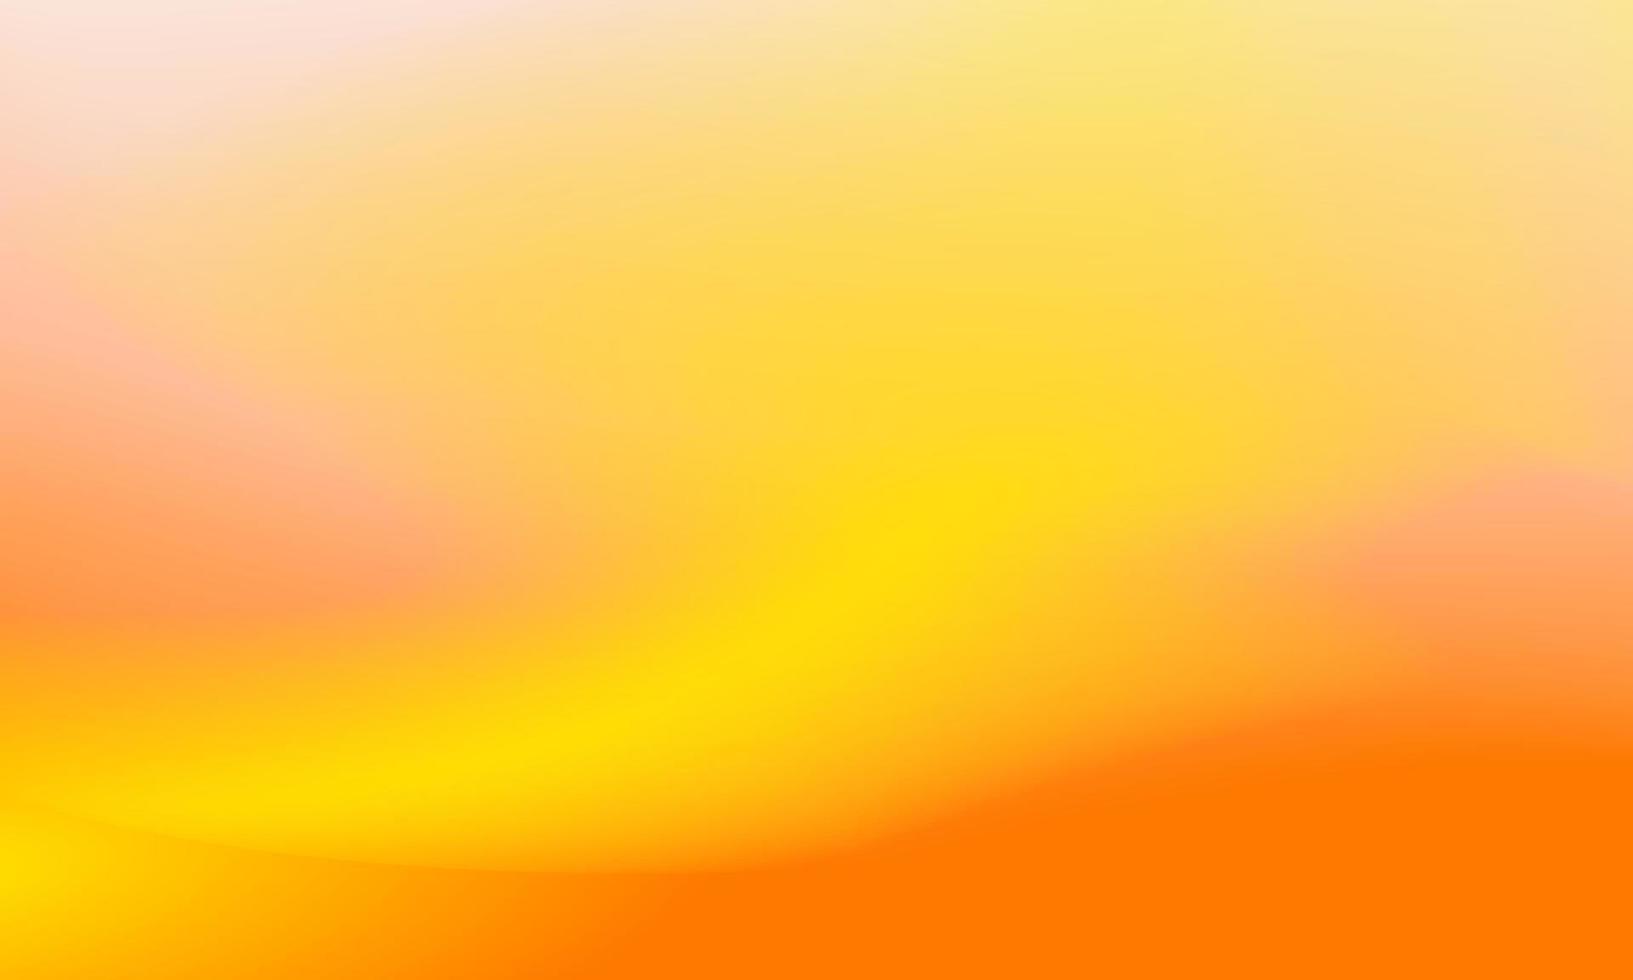 bellissimo sfondo sfumato di giallo e arancione, consistenza liscia e morbida vettore